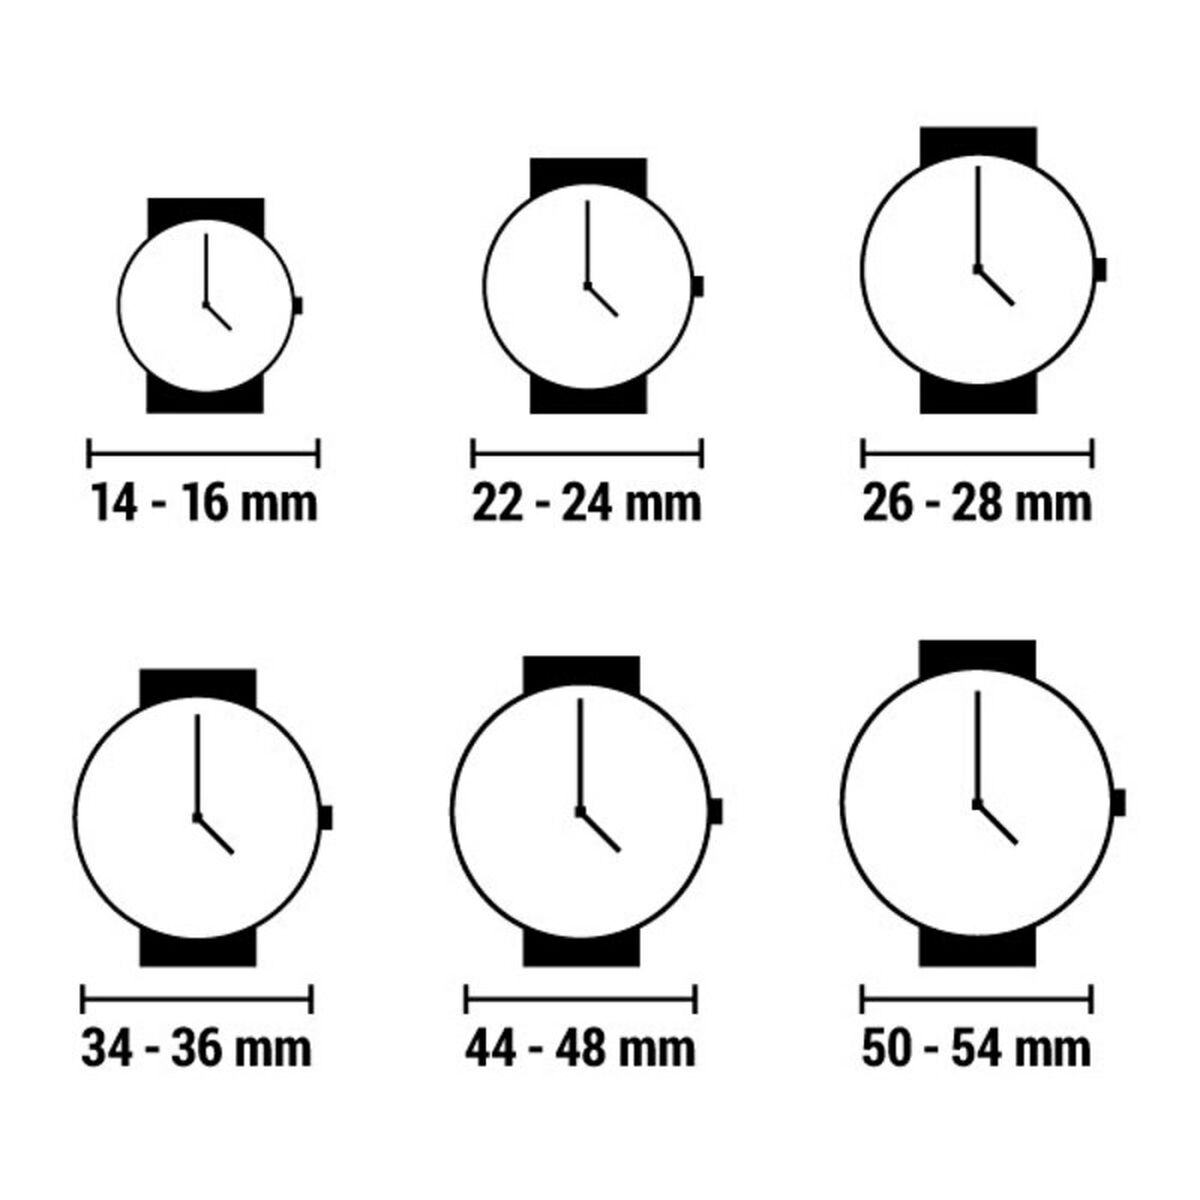 Horloge Dames Time Force TF3301L14 (Ø 40 mm)